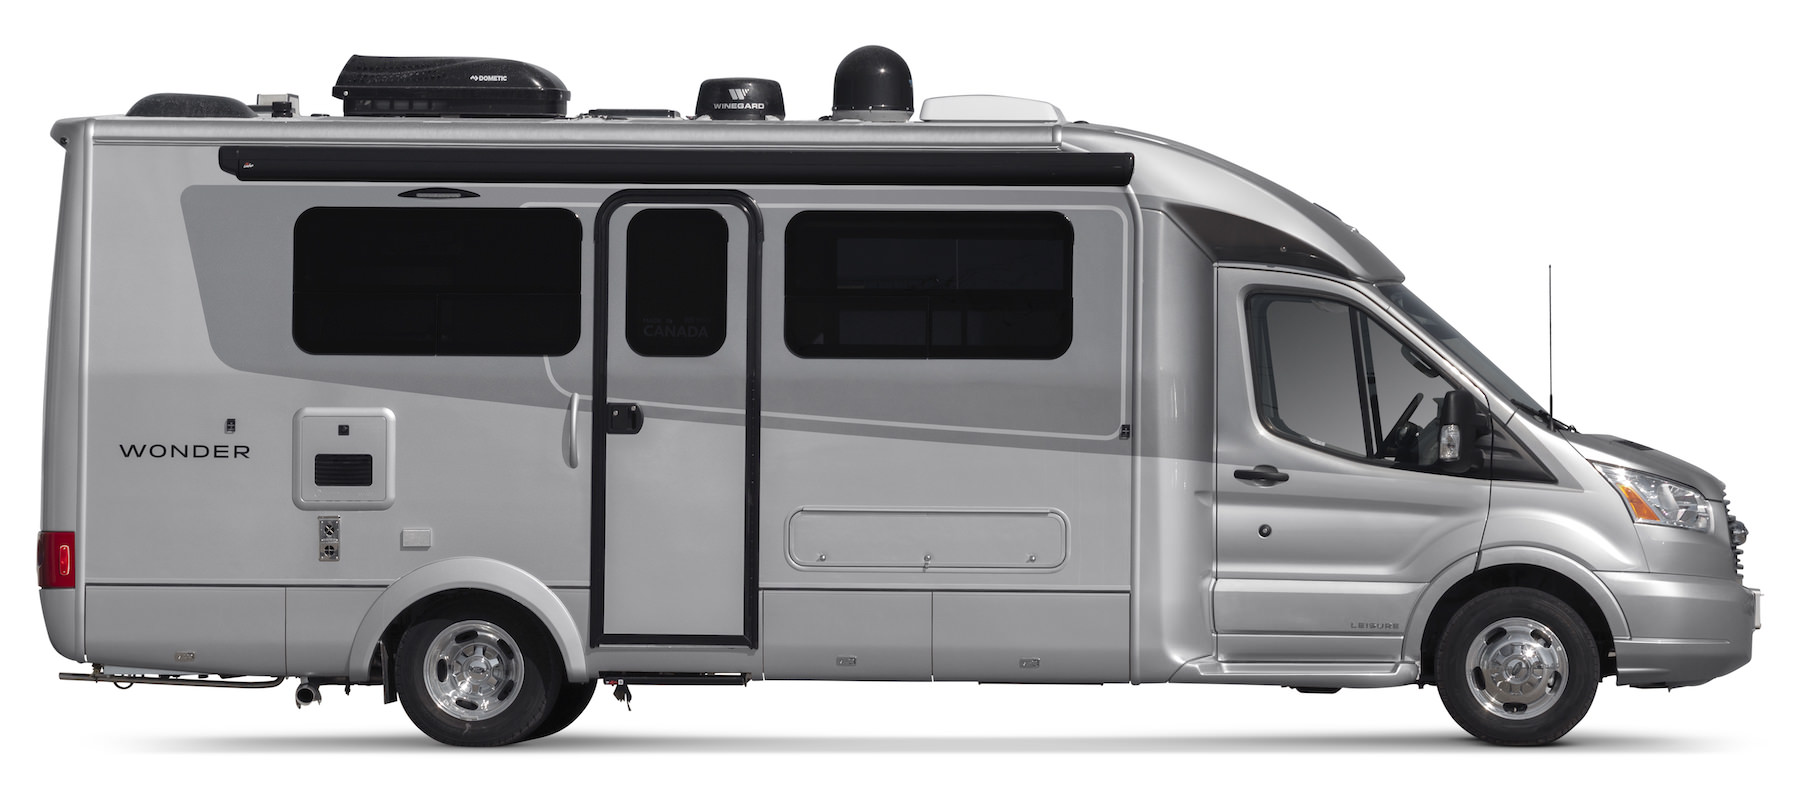 Wonder - Storage - Front Twin Bed - Leisure Travel Vans